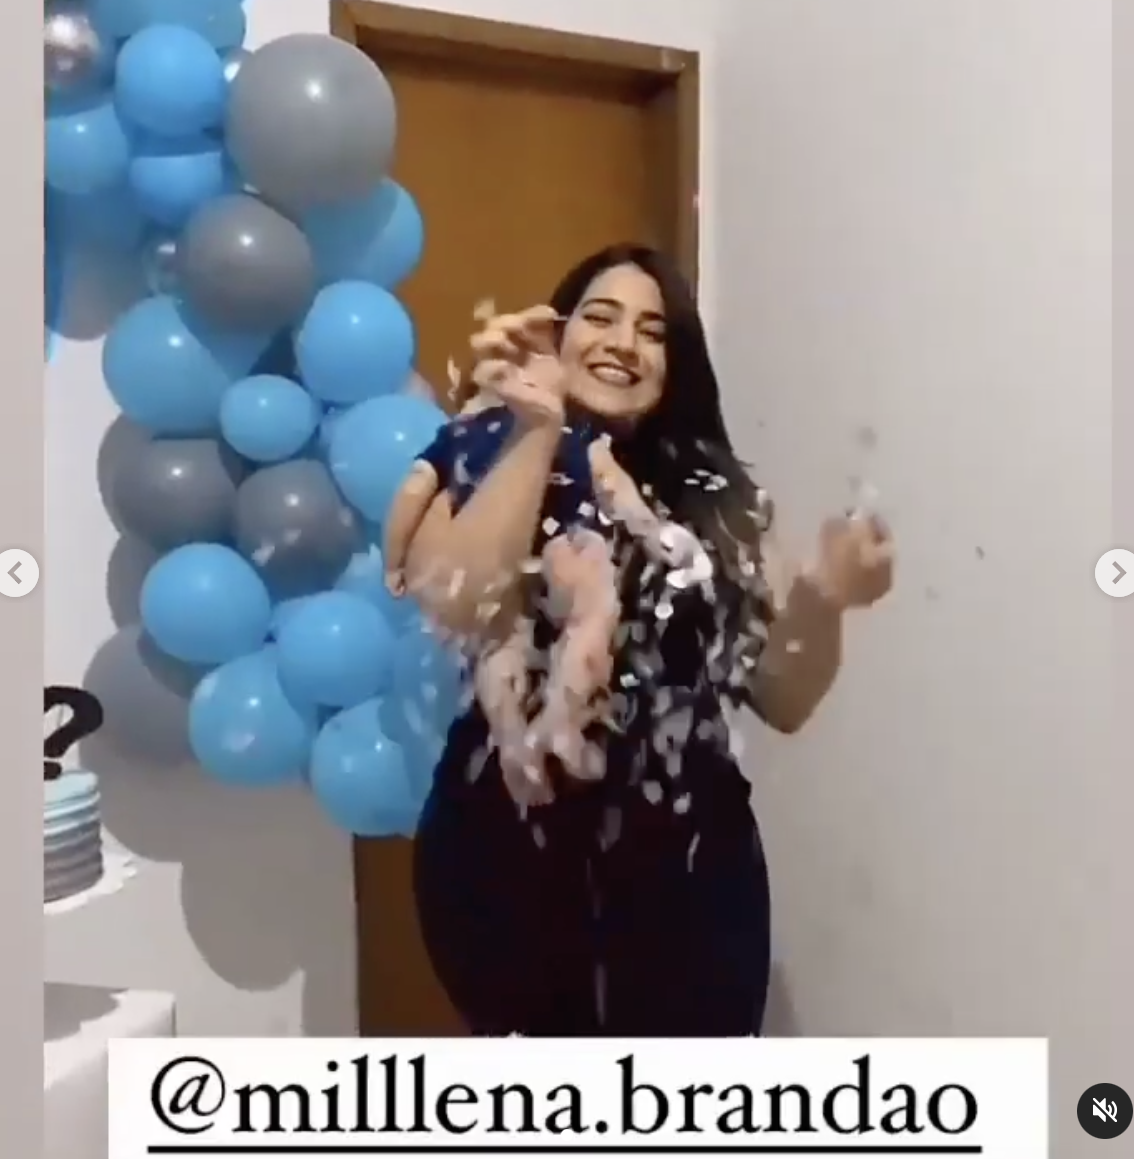 Millena Brandao lässt den Ballon platzen und silbernes Konfetti kommt heraus | Quelle: instagram.com/milllena.brandao